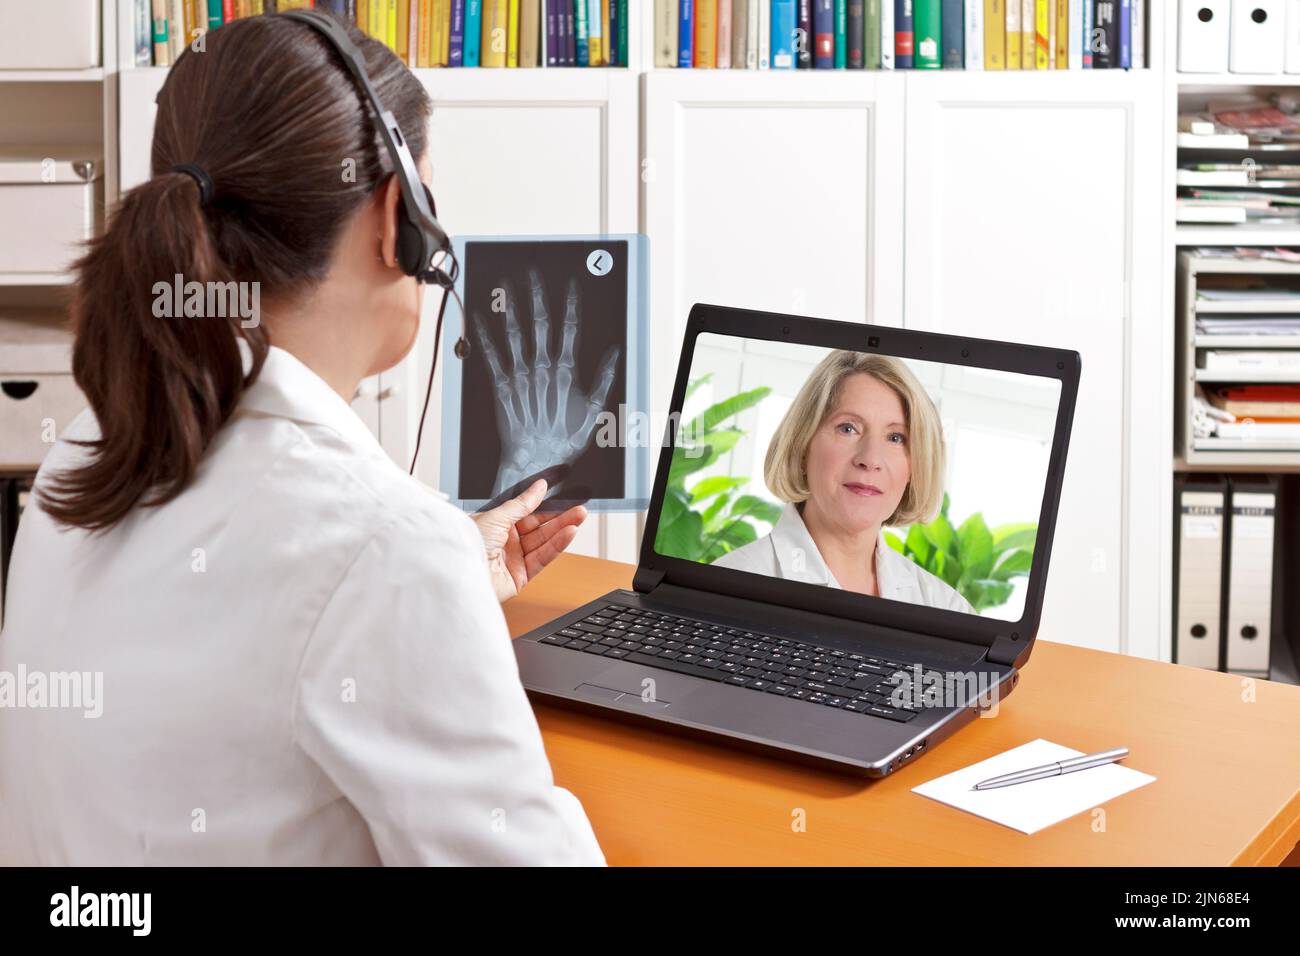 Concepto de telemedicina: Dos médicos o farmacéuticos durante una videoconferencia médica sobre los resultados de los rayos X. Foto de stock